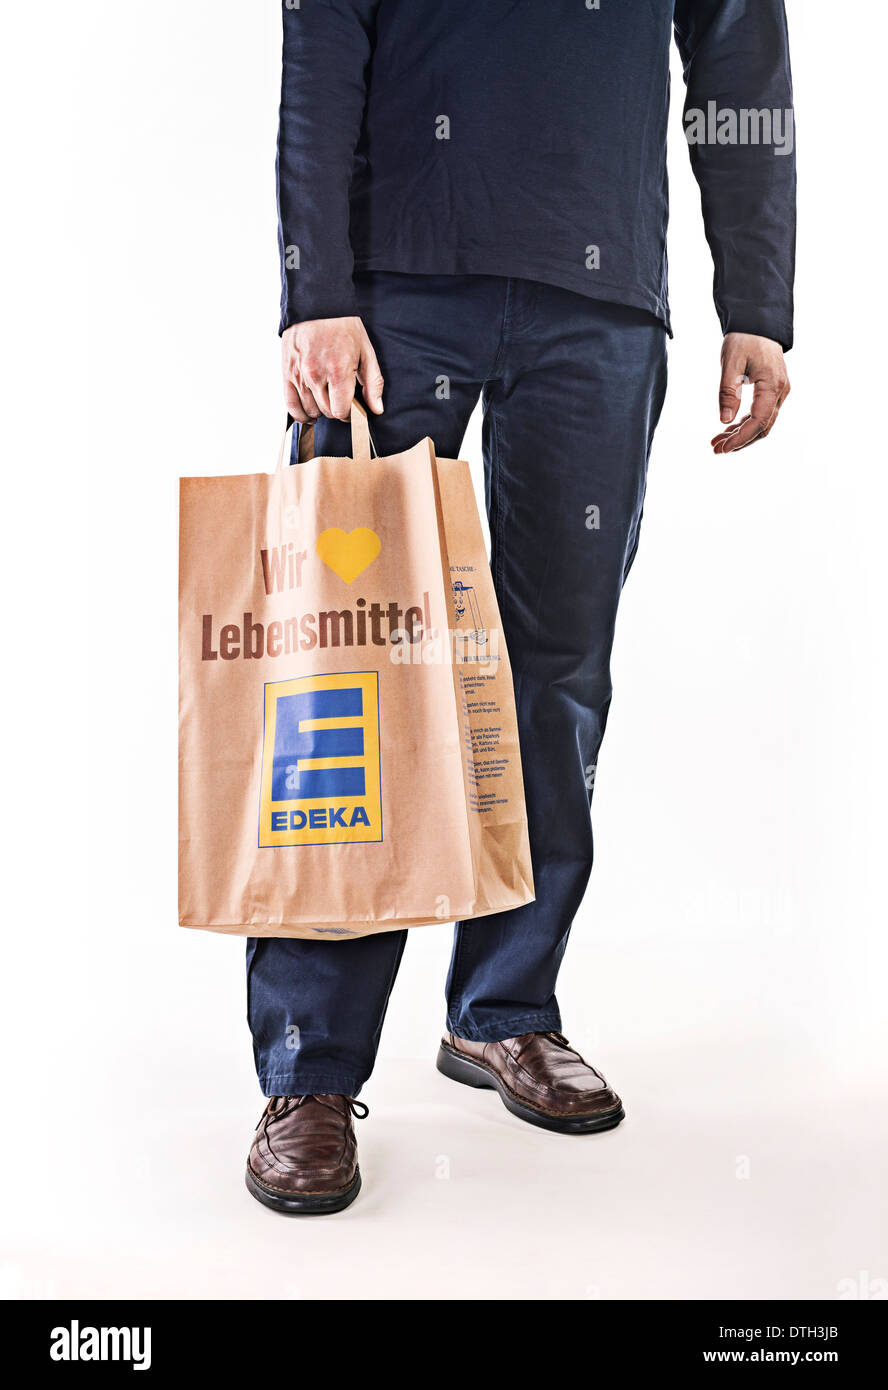 La partie inférieure du corps d'un homme portant un sac de papier de la chaîne alimentaire Edeka. Banque D'Images